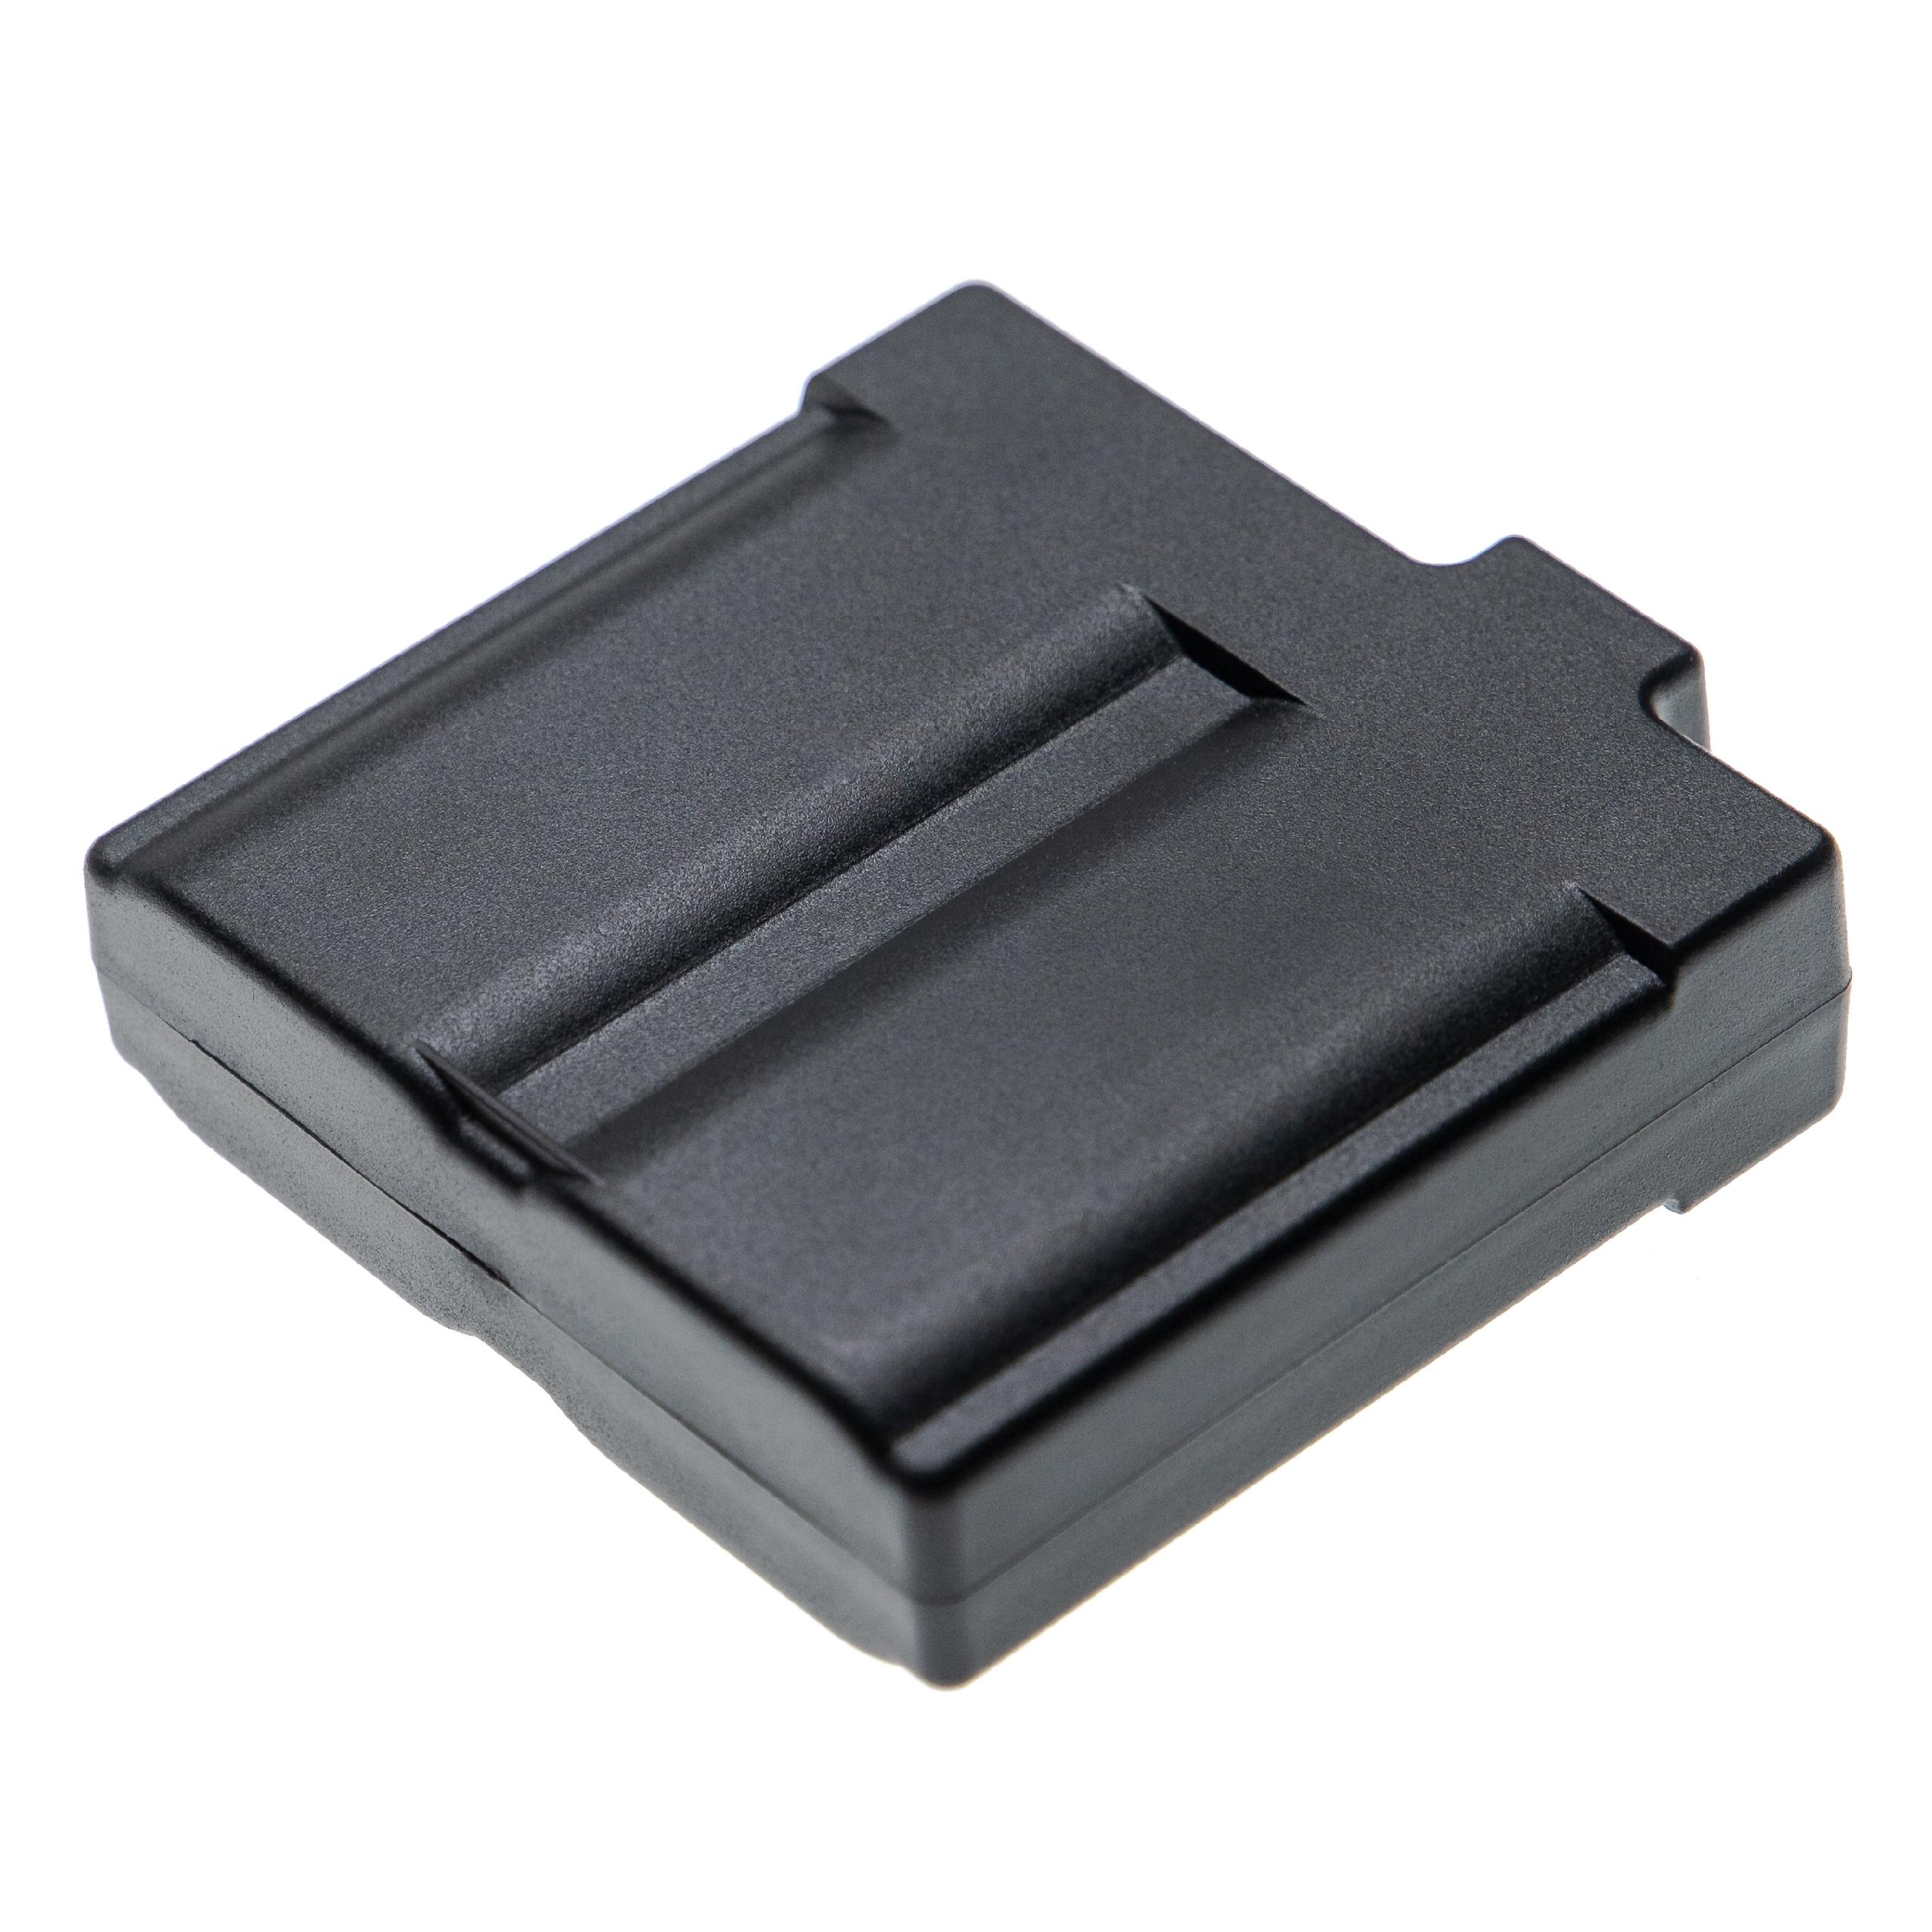 Thermal Imaging Camera Battery Replacement for Flir 119268-07, 1195268-02, 1195268-06 - 5200mAh 7.4V Li-Ion